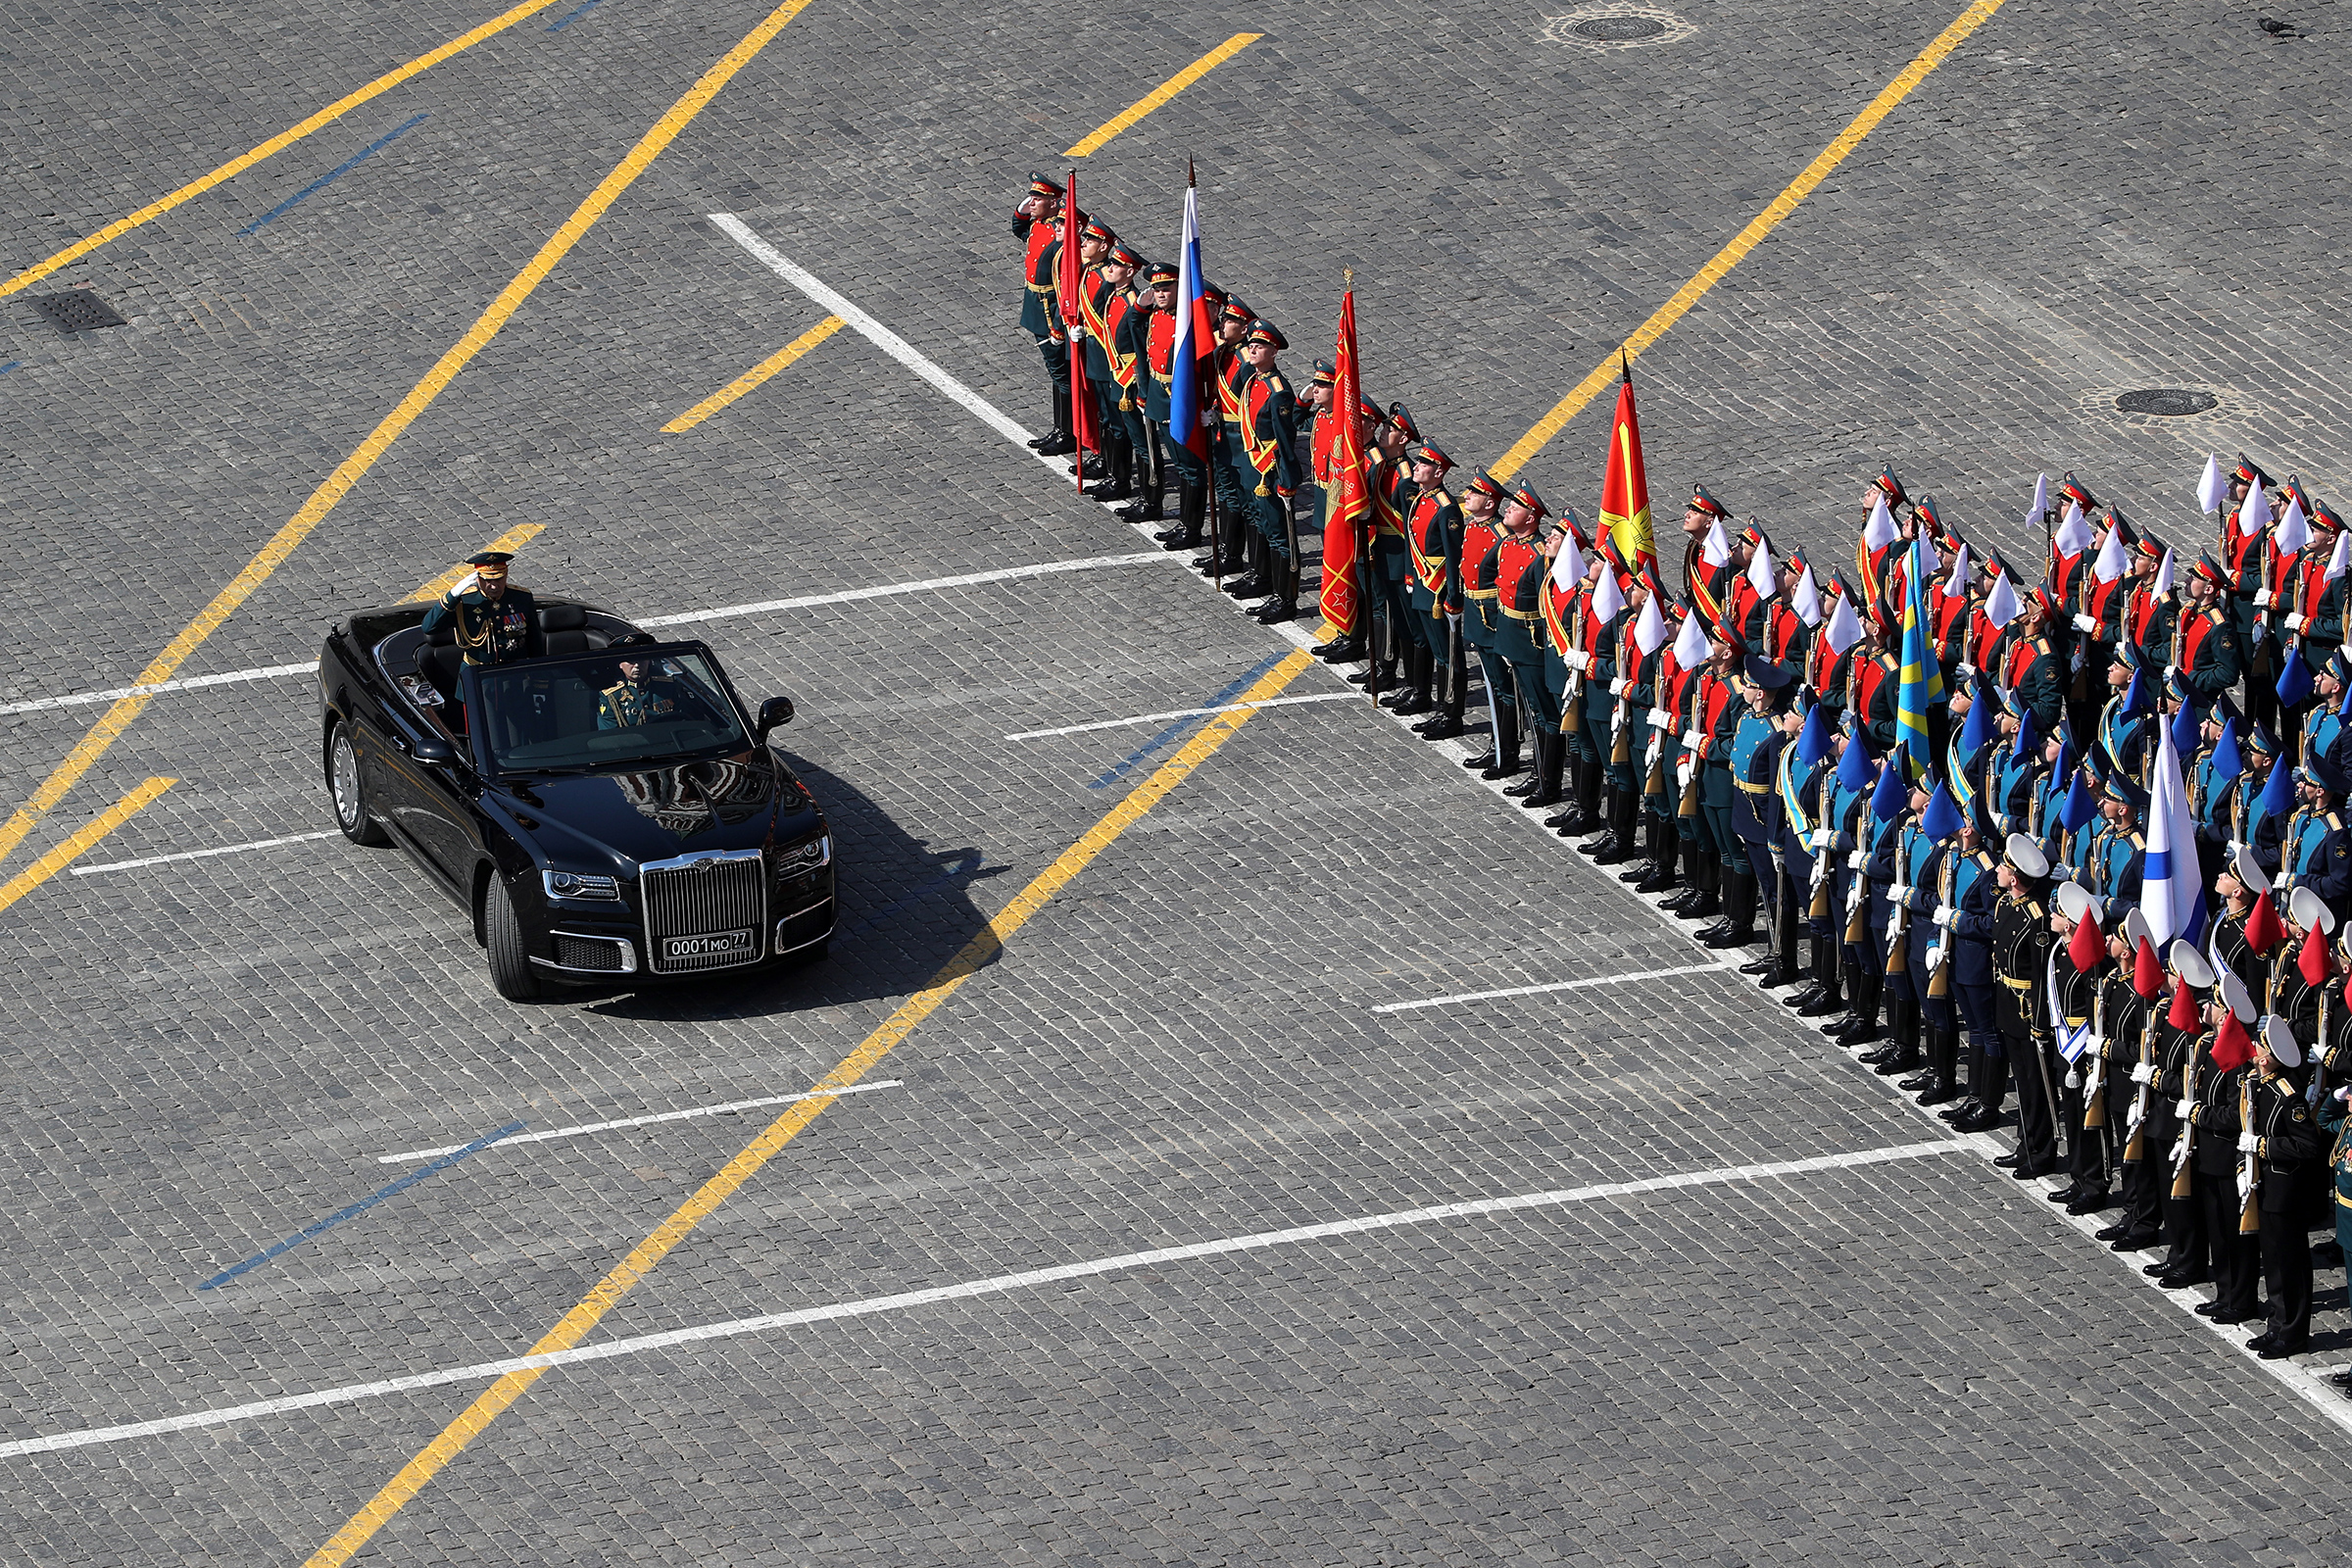 Министр обороны РФ Сергей Шойгу, принимающий парад, в кабриолете Aurus Senat. Автомобиль примет участие в параде впервые